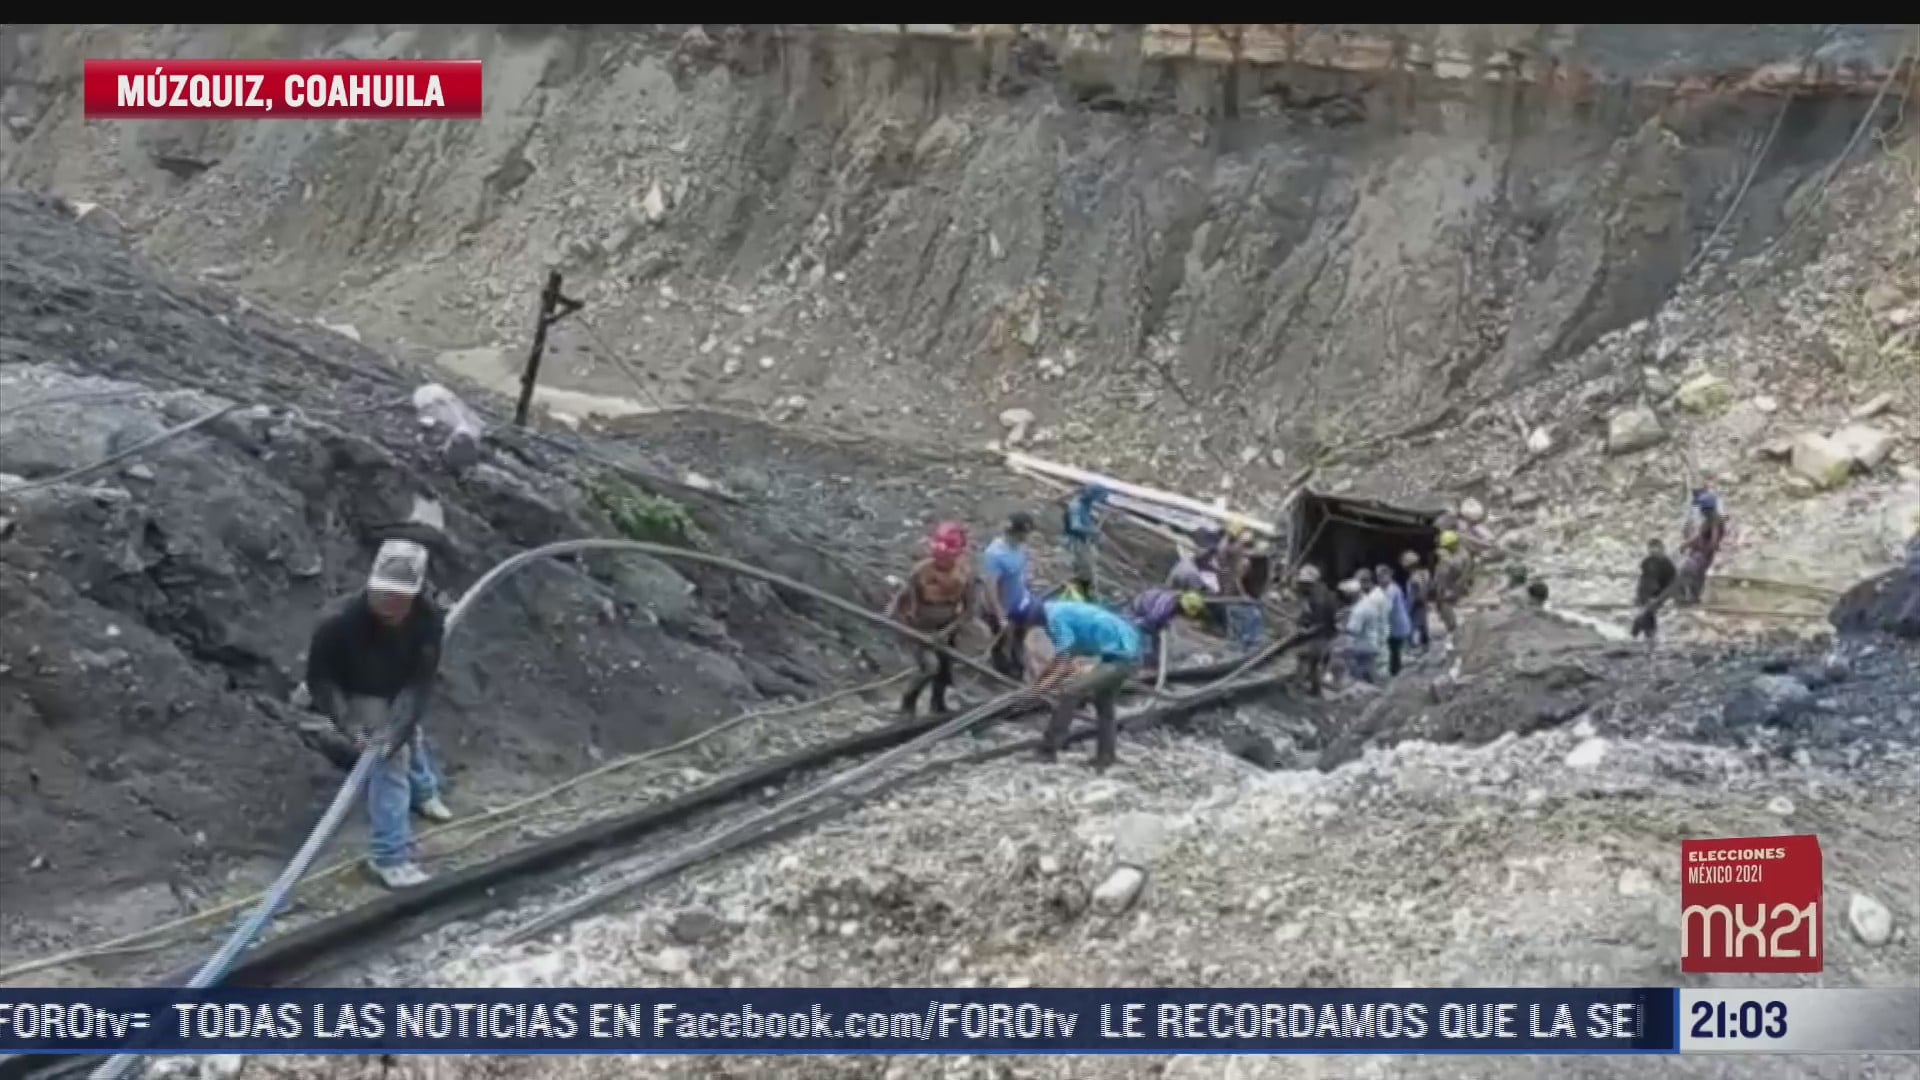 siguen atrapados al menos 7 mineros en muzquiz coahuila